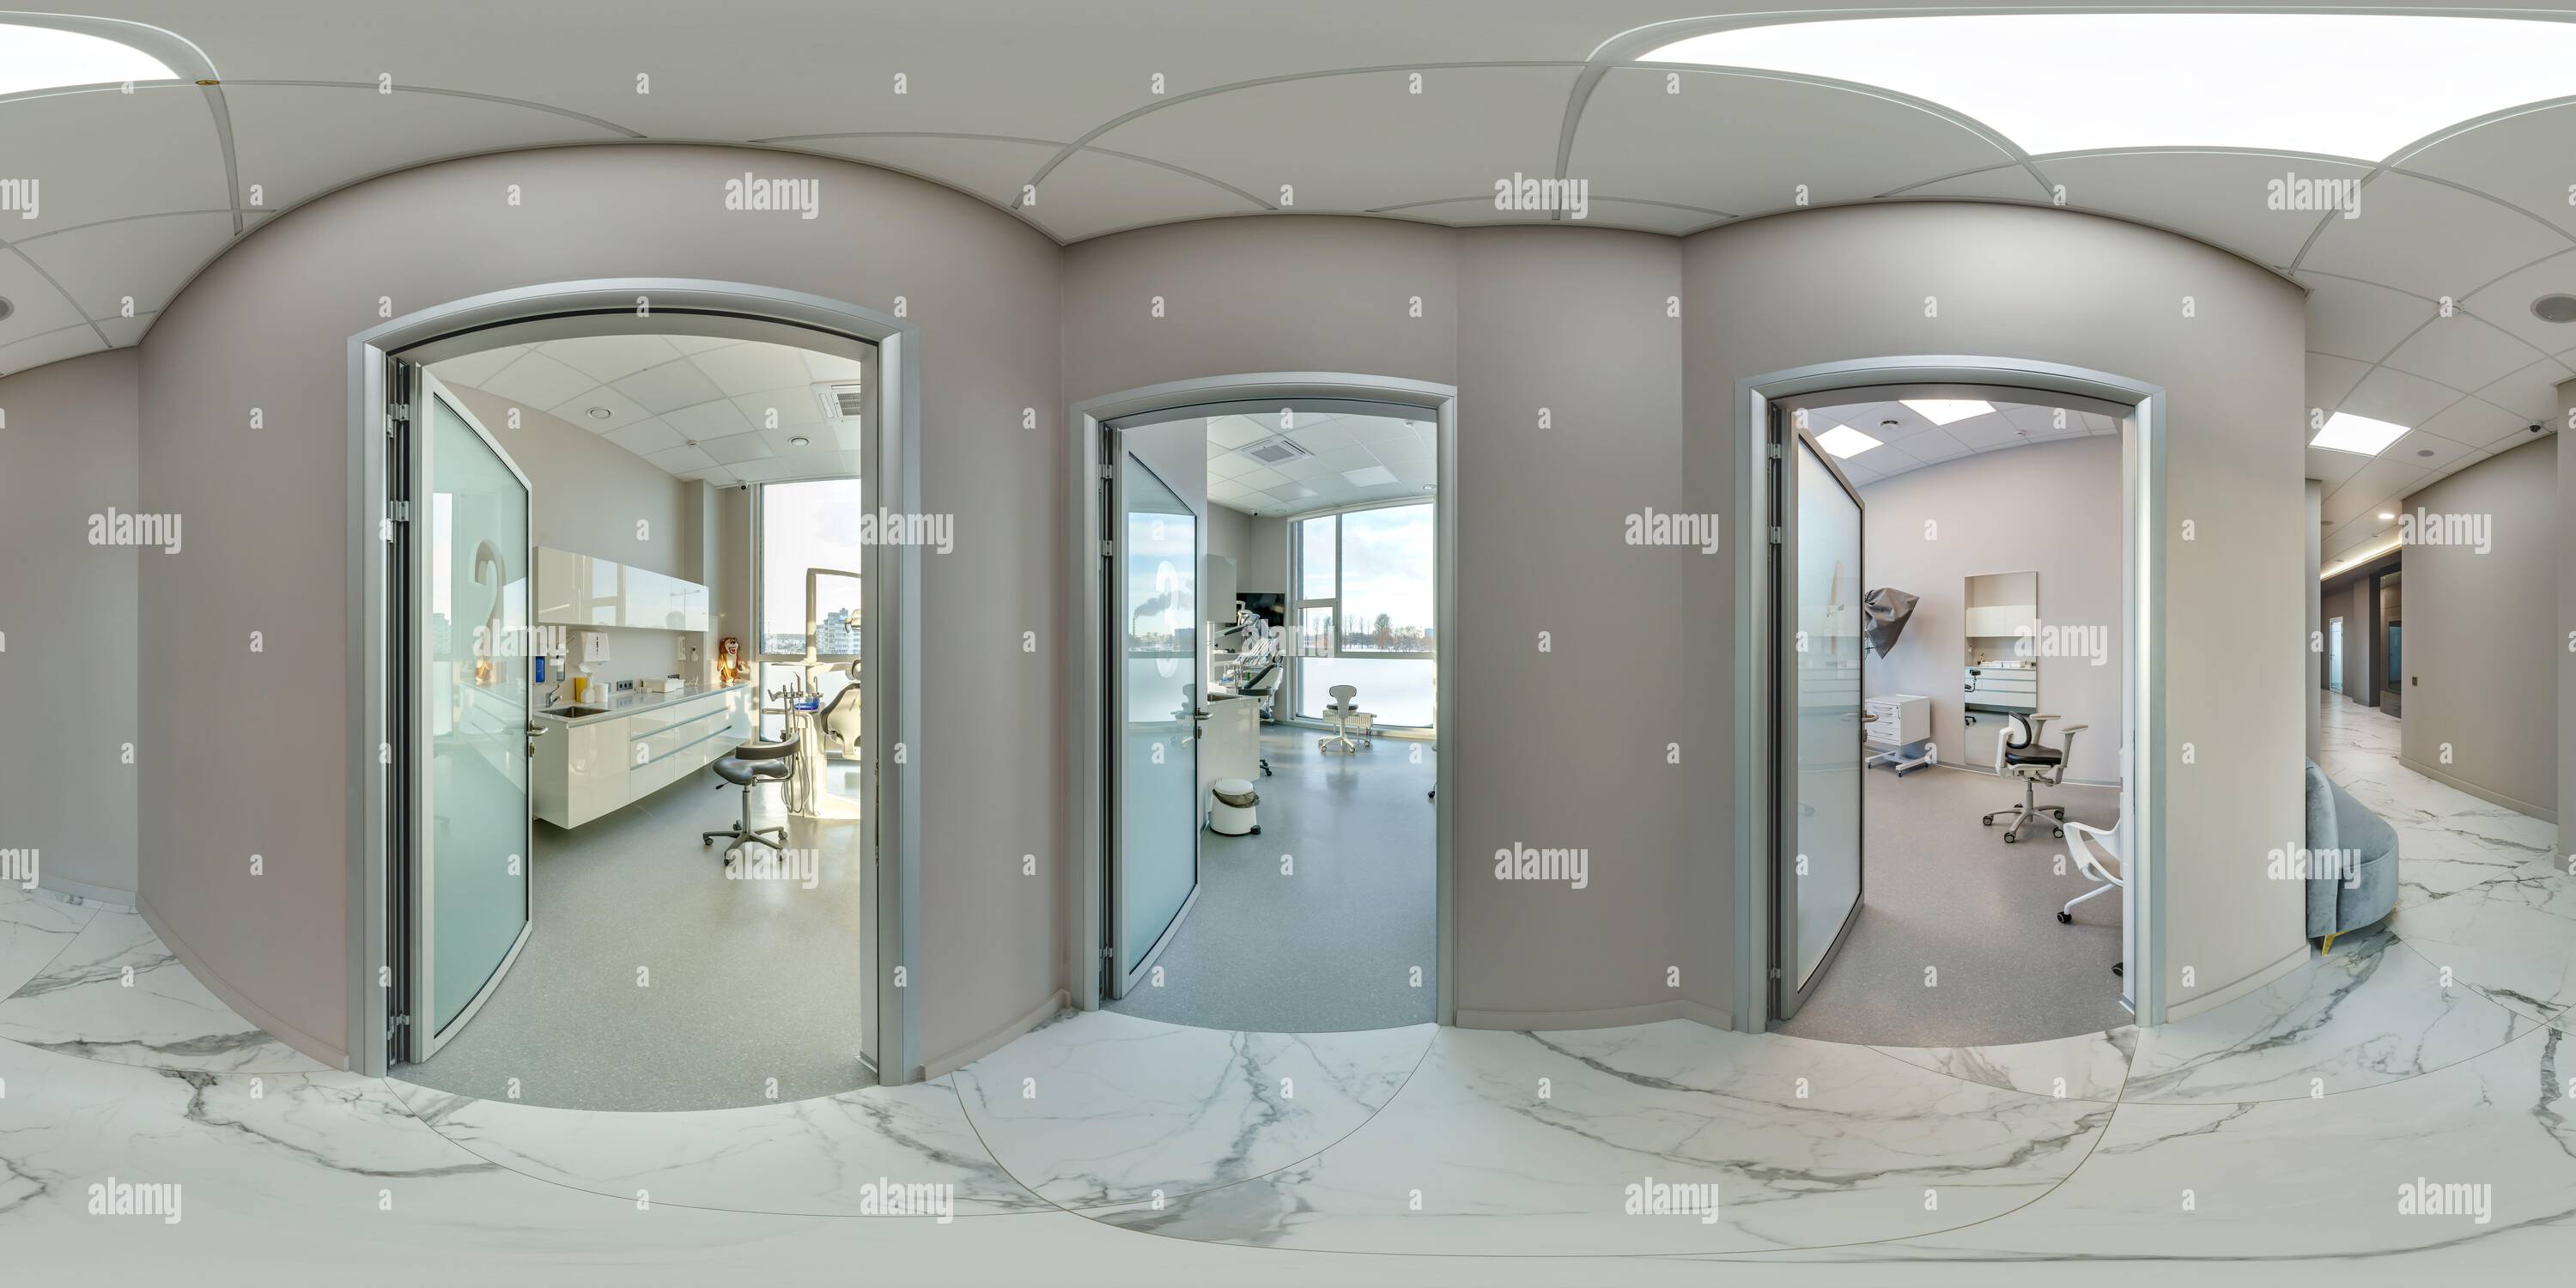 Visualizzazione panoramica a 360 gradi di Panoramica Full hdri 360 nel corridoio della clinica odontoiatrica di fronte alle porte delle sale di trattamento con proiezione equirettangolare, contenuti VR,